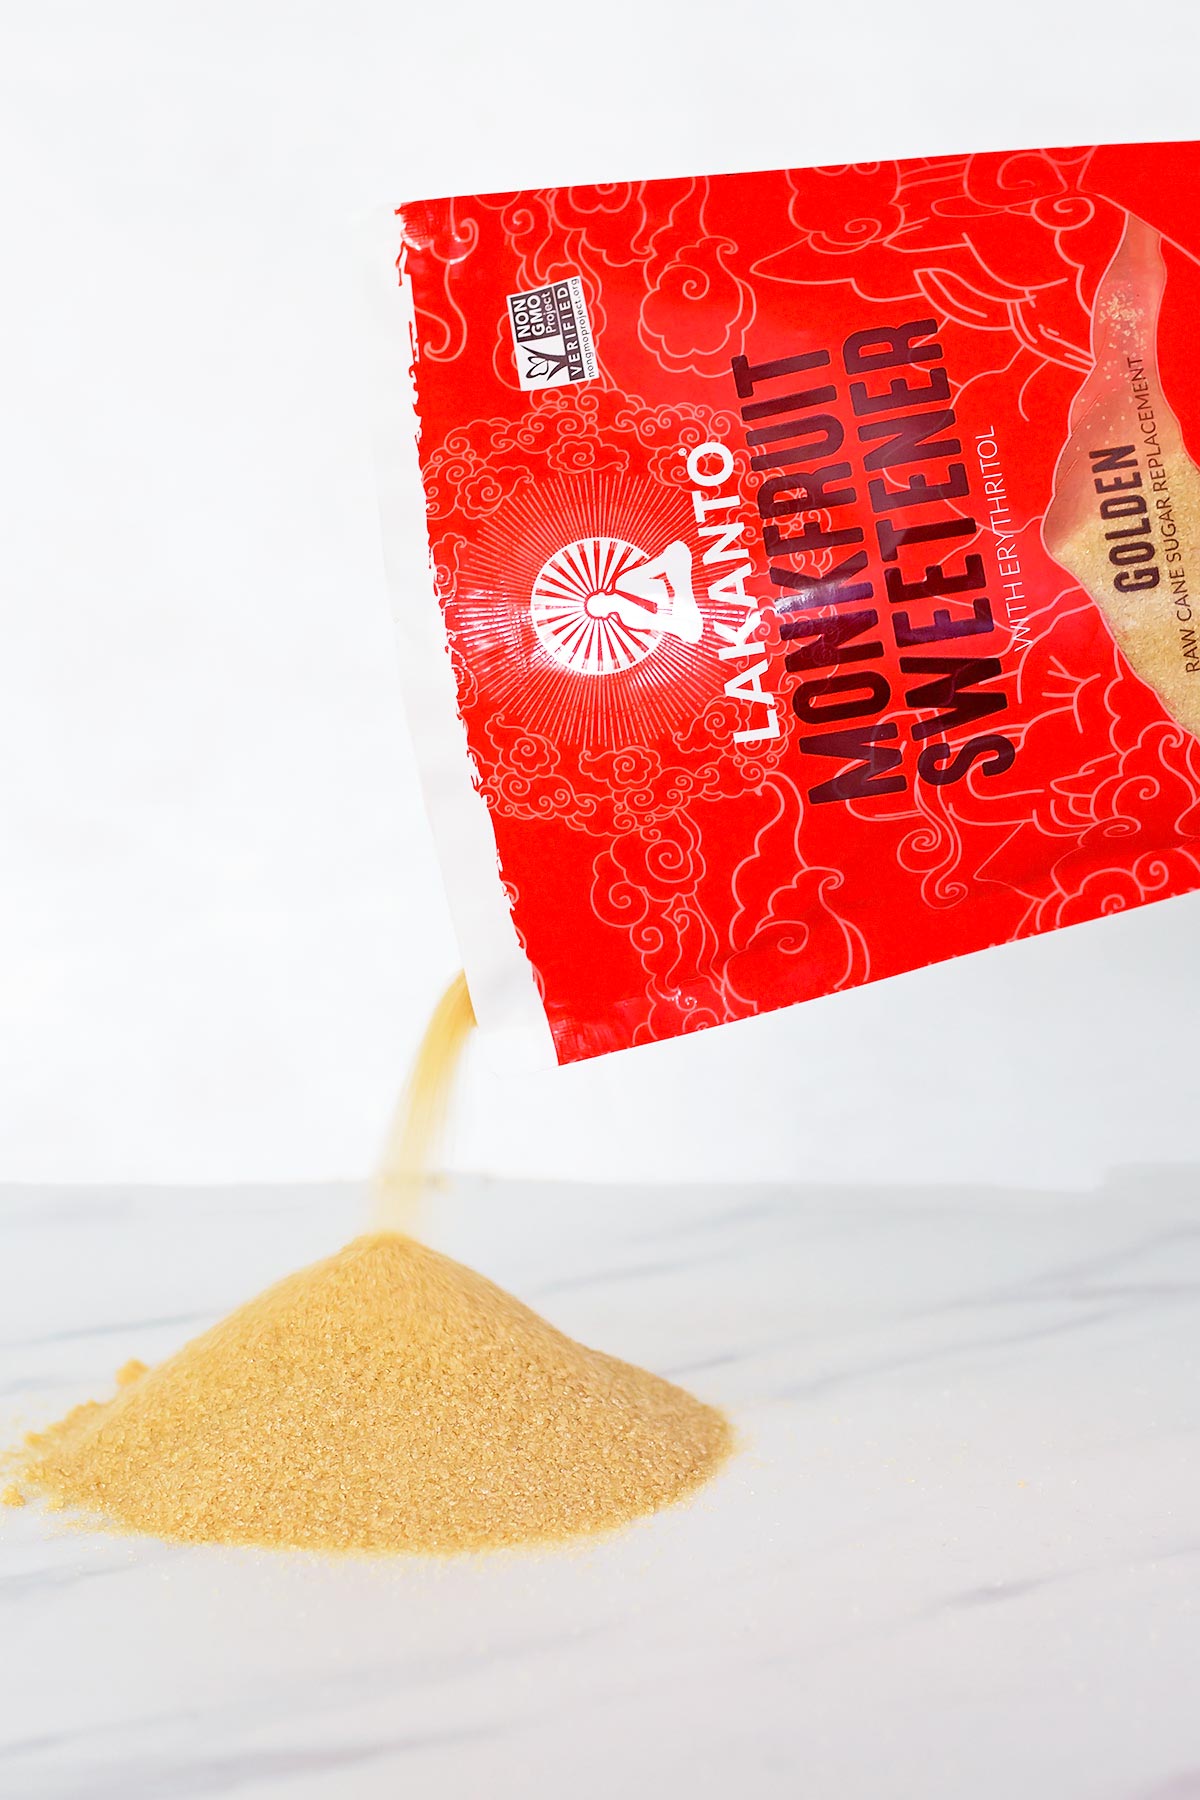 Bag of Golden Monk Fruit Sweetener